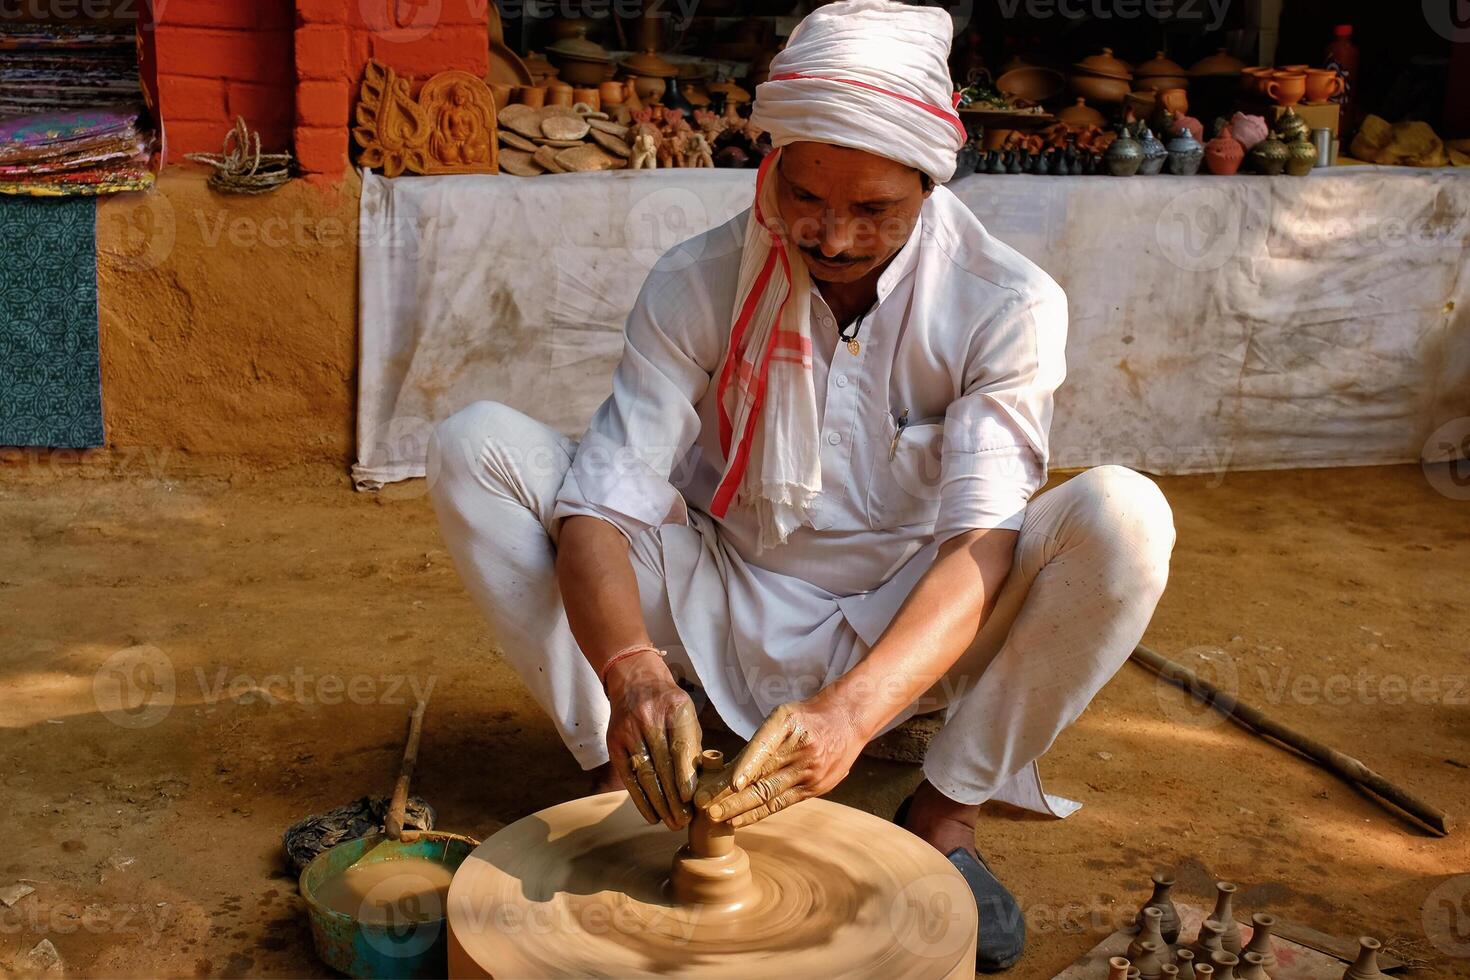 indisch Töpfer beim arbeiten, Shilpagramm, Udaipur, Rajasthan, Indien foto